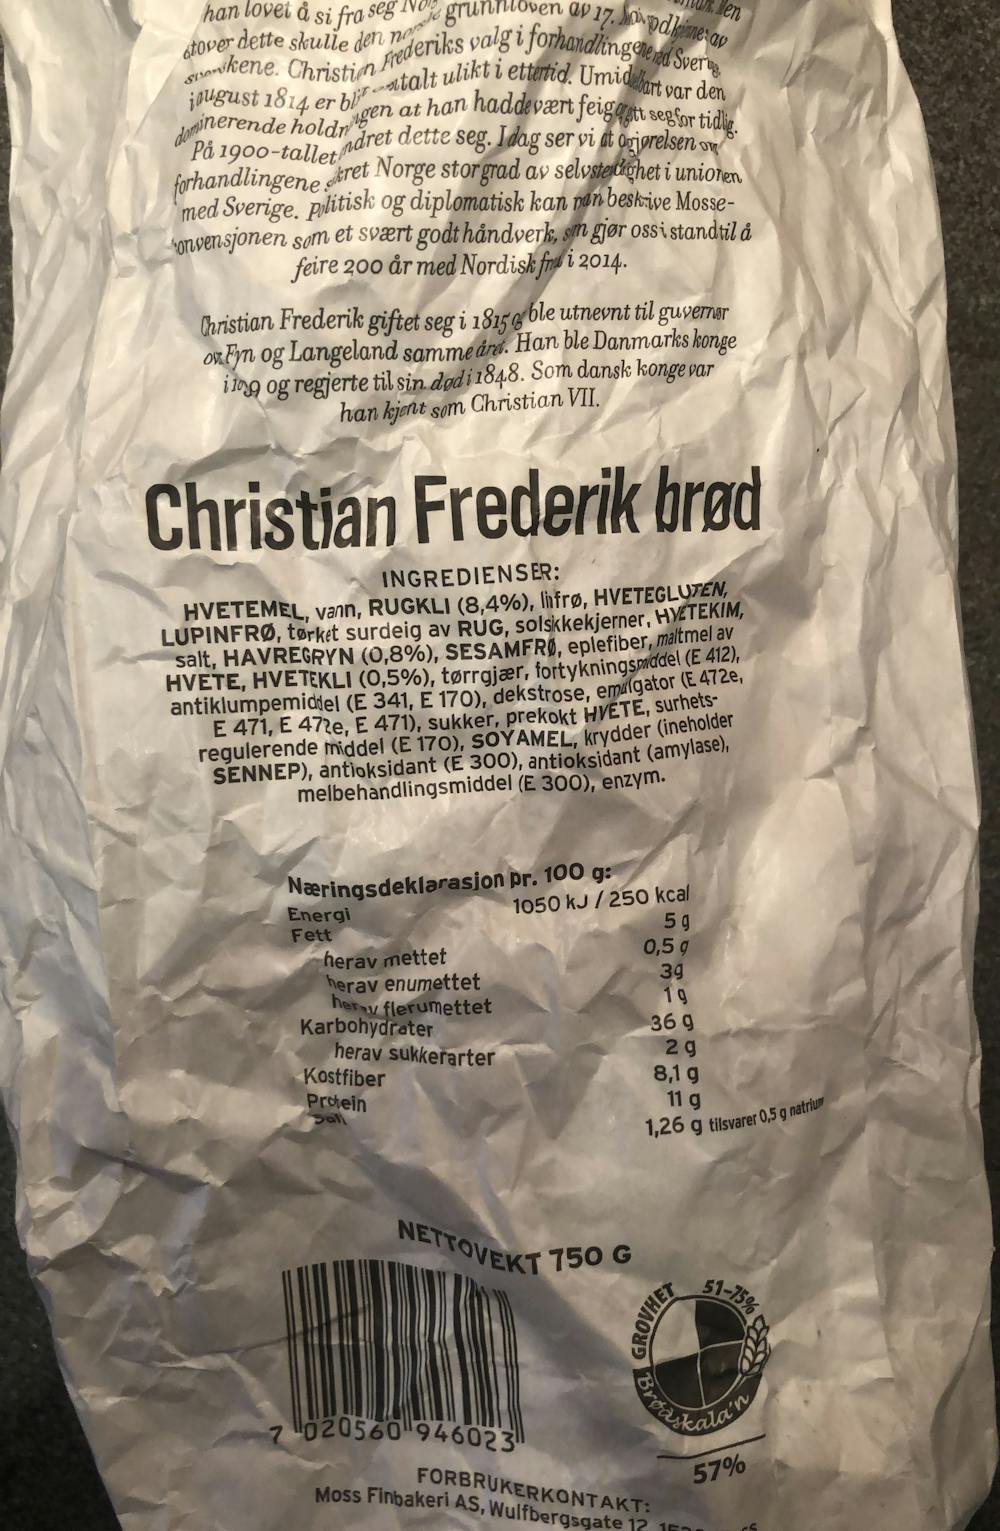 Ingredienslisten til Moss finbakeri Christian Frederik brød